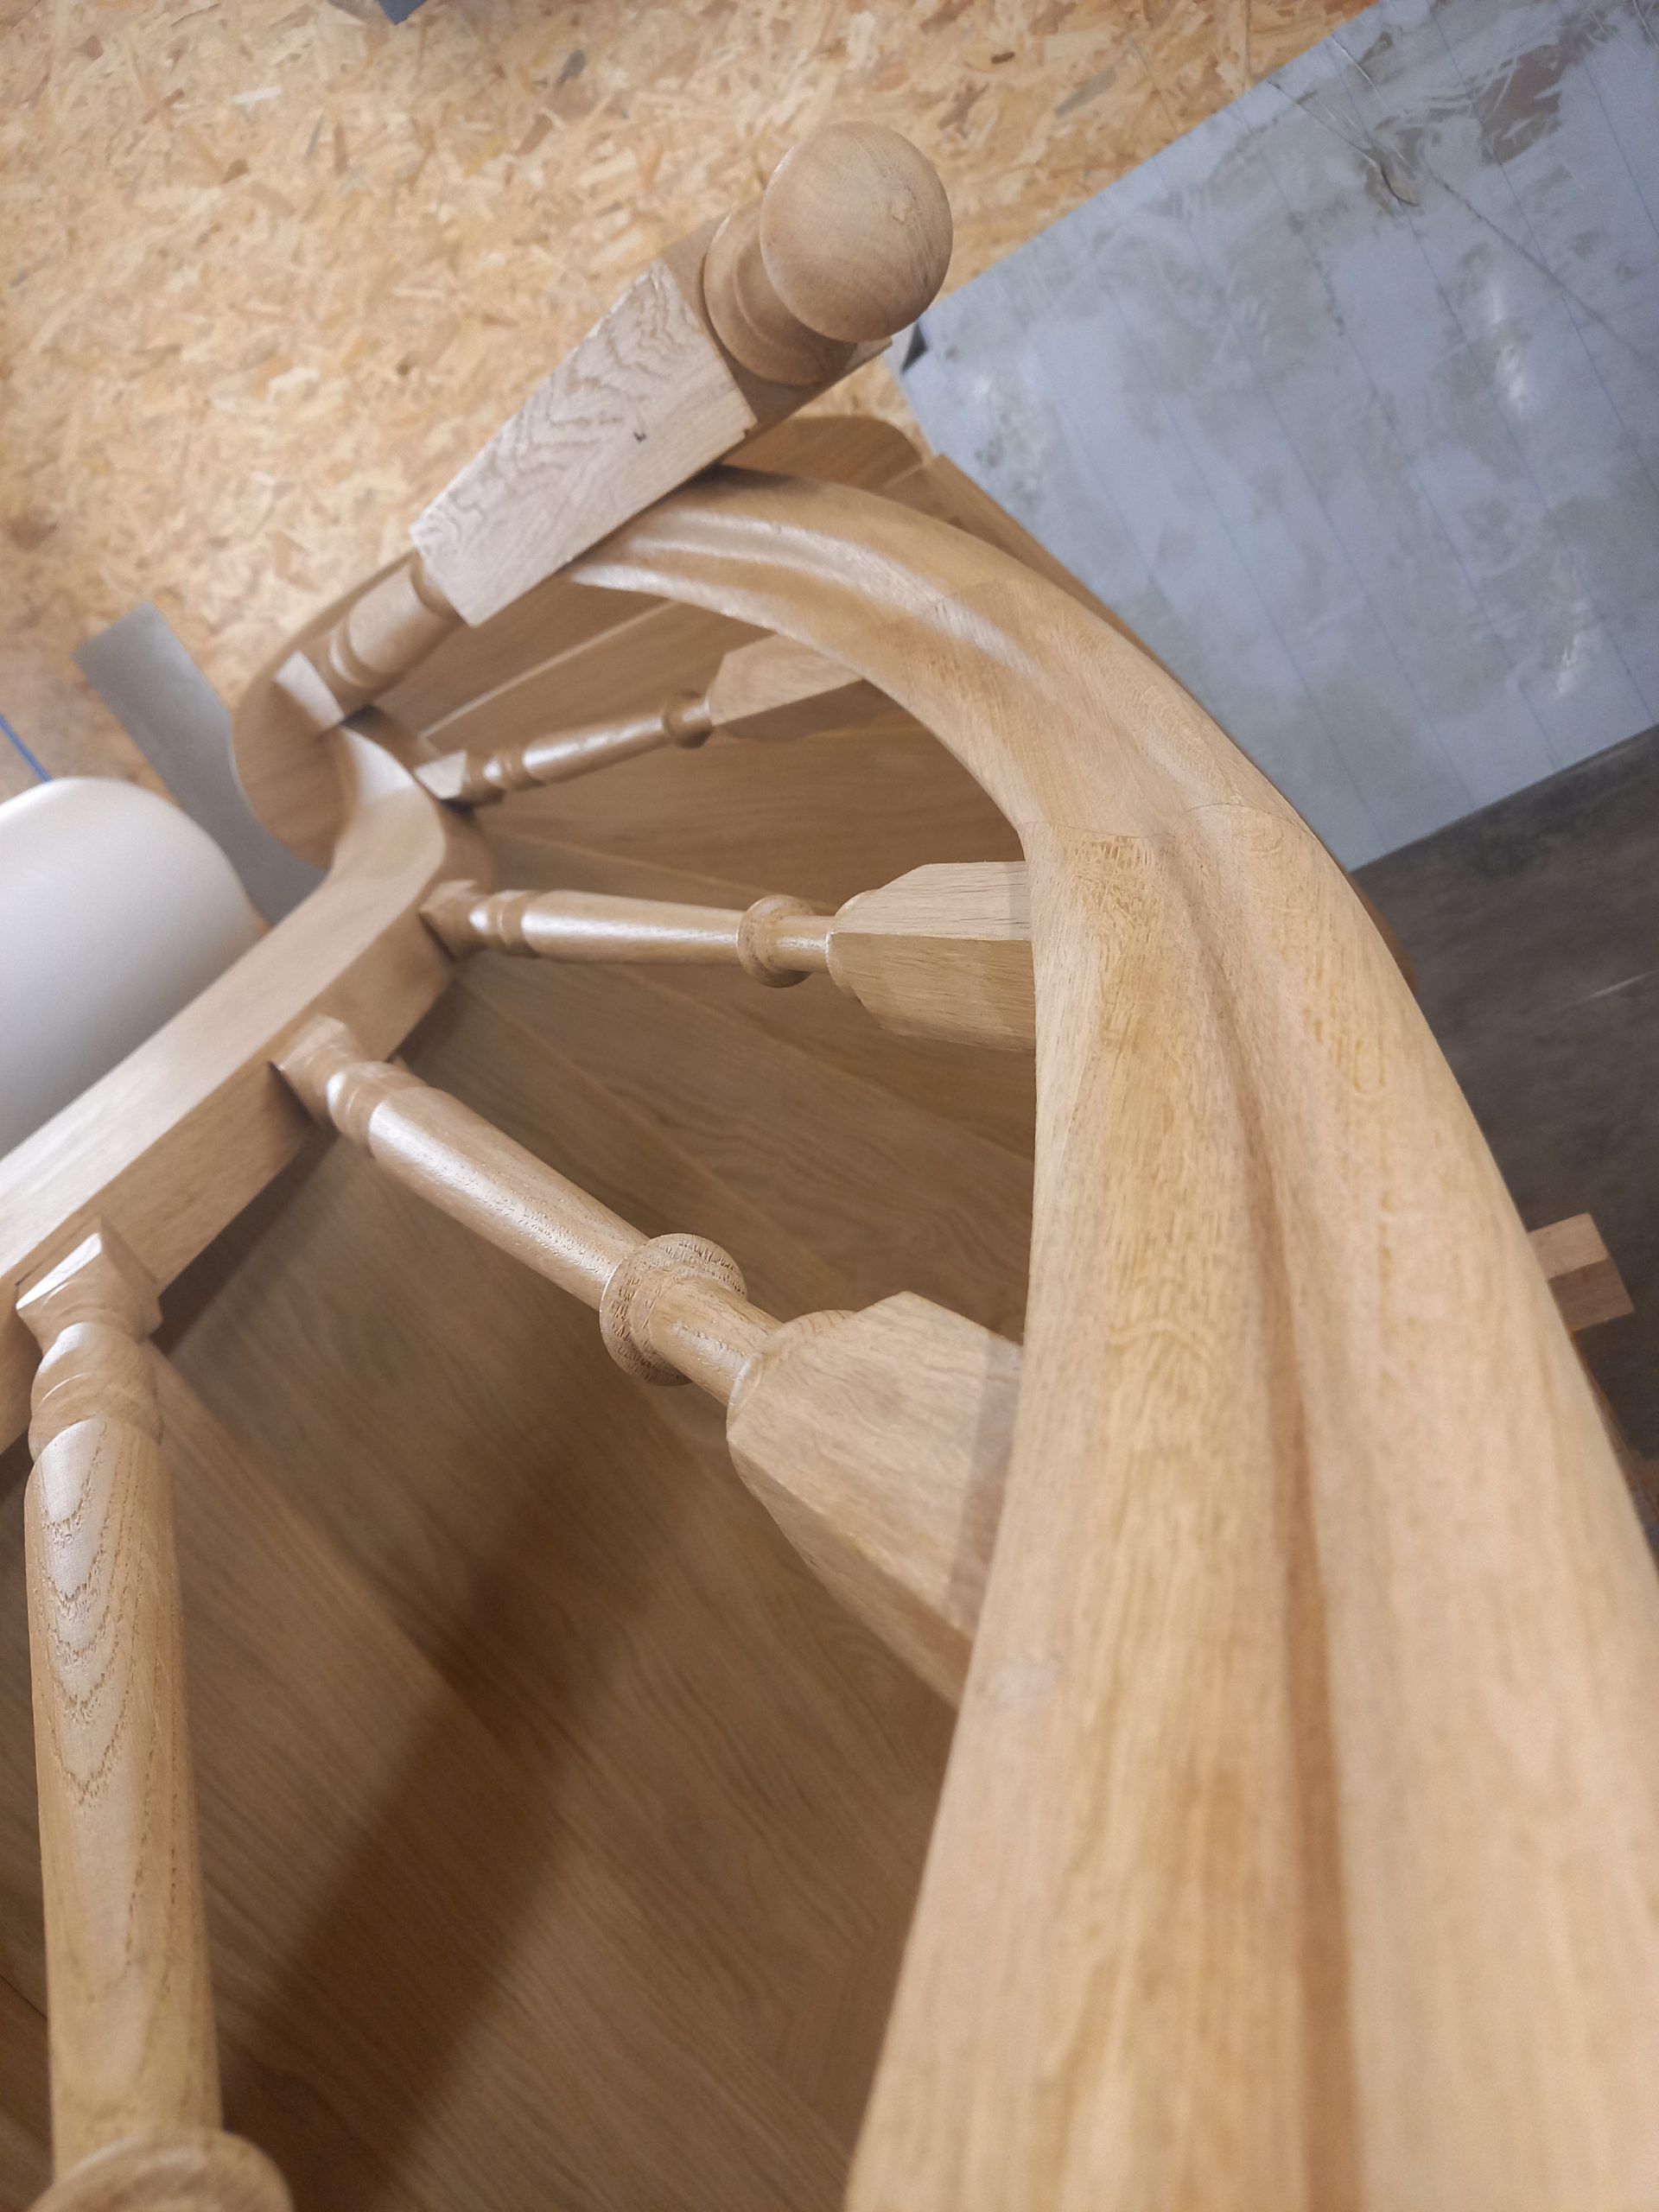 Fabrication et pose de persiennes bois sur mesure Cany-Barville 76 -  Entreprise Carpentier